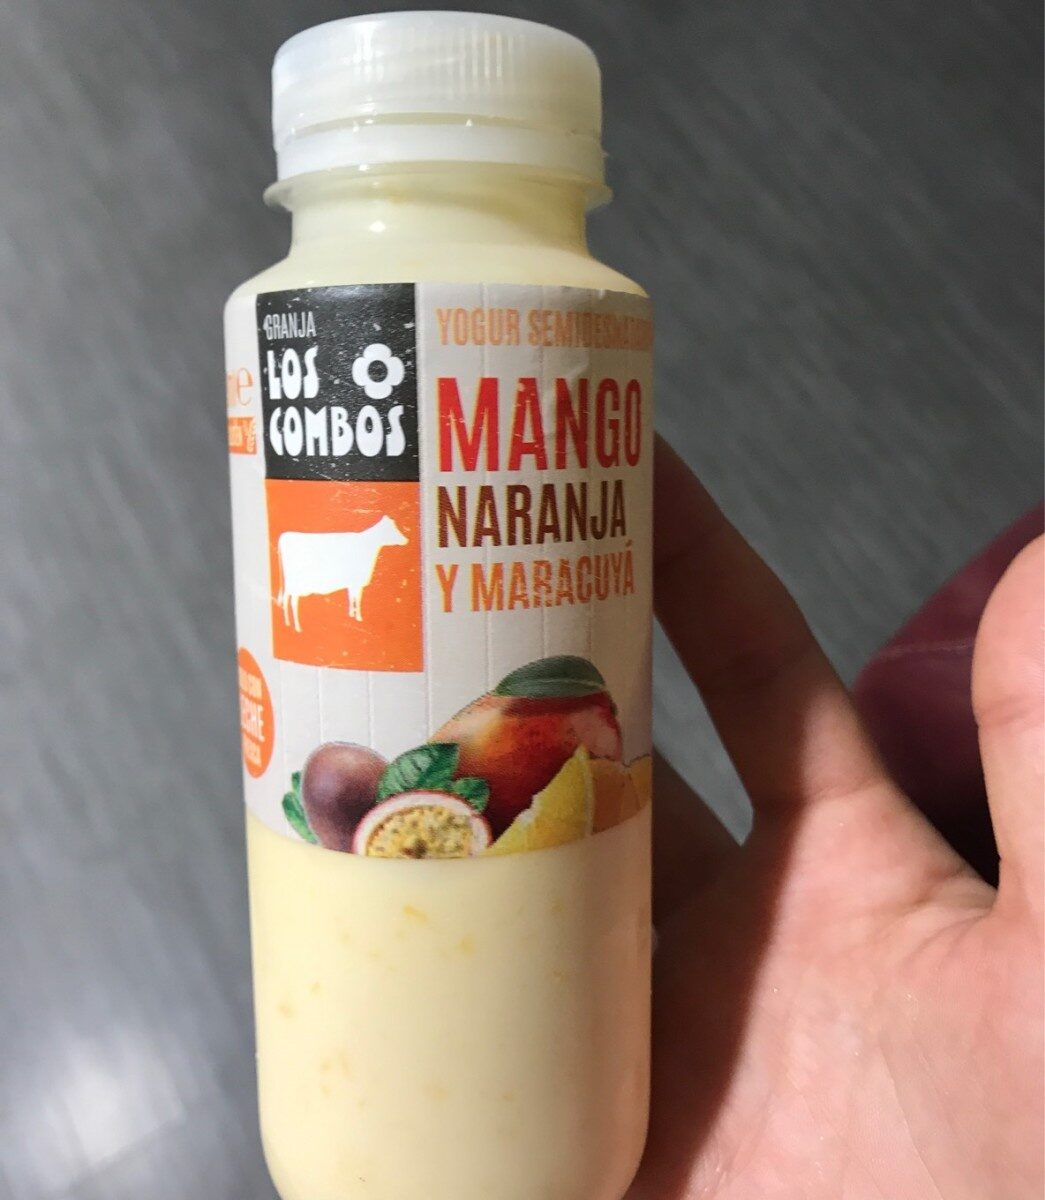 Yogur semidesnatado de mango naranja y maracuya - Producte - fr